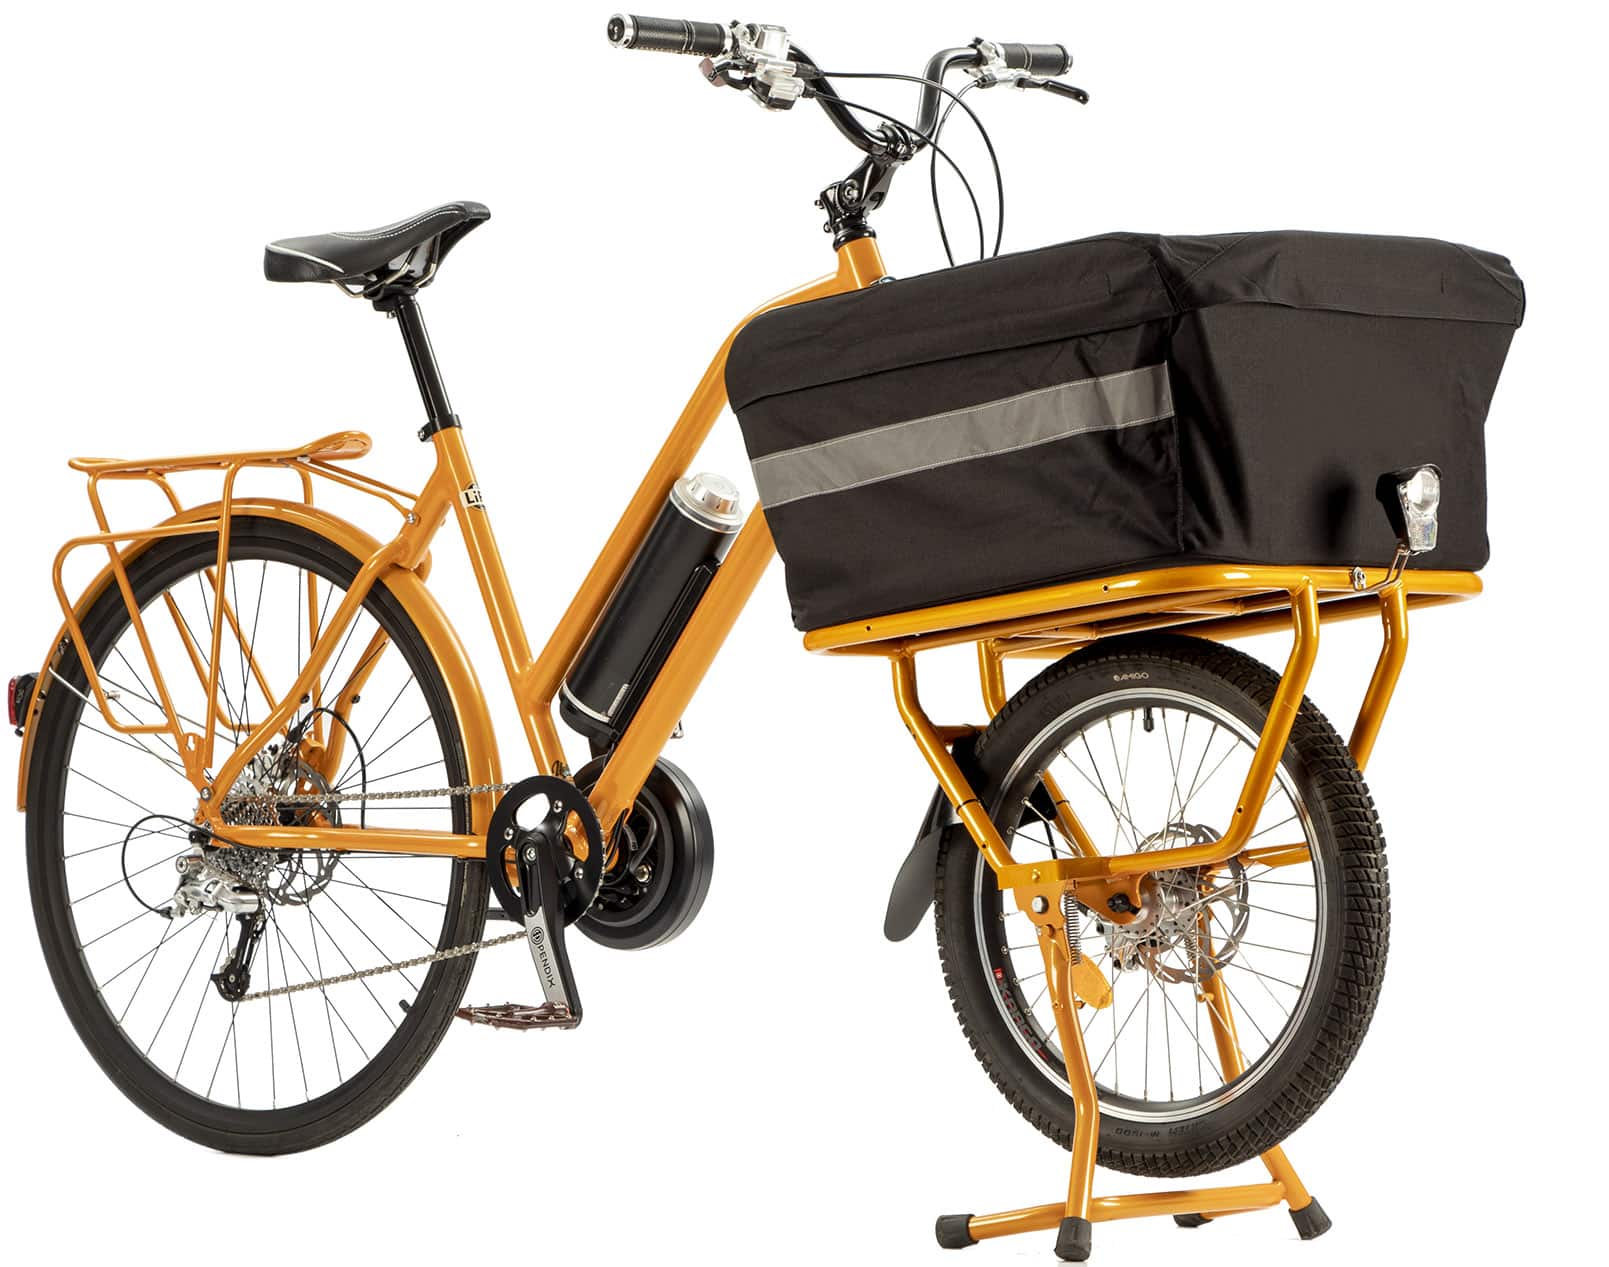 bici electrica bocyclo carga completa